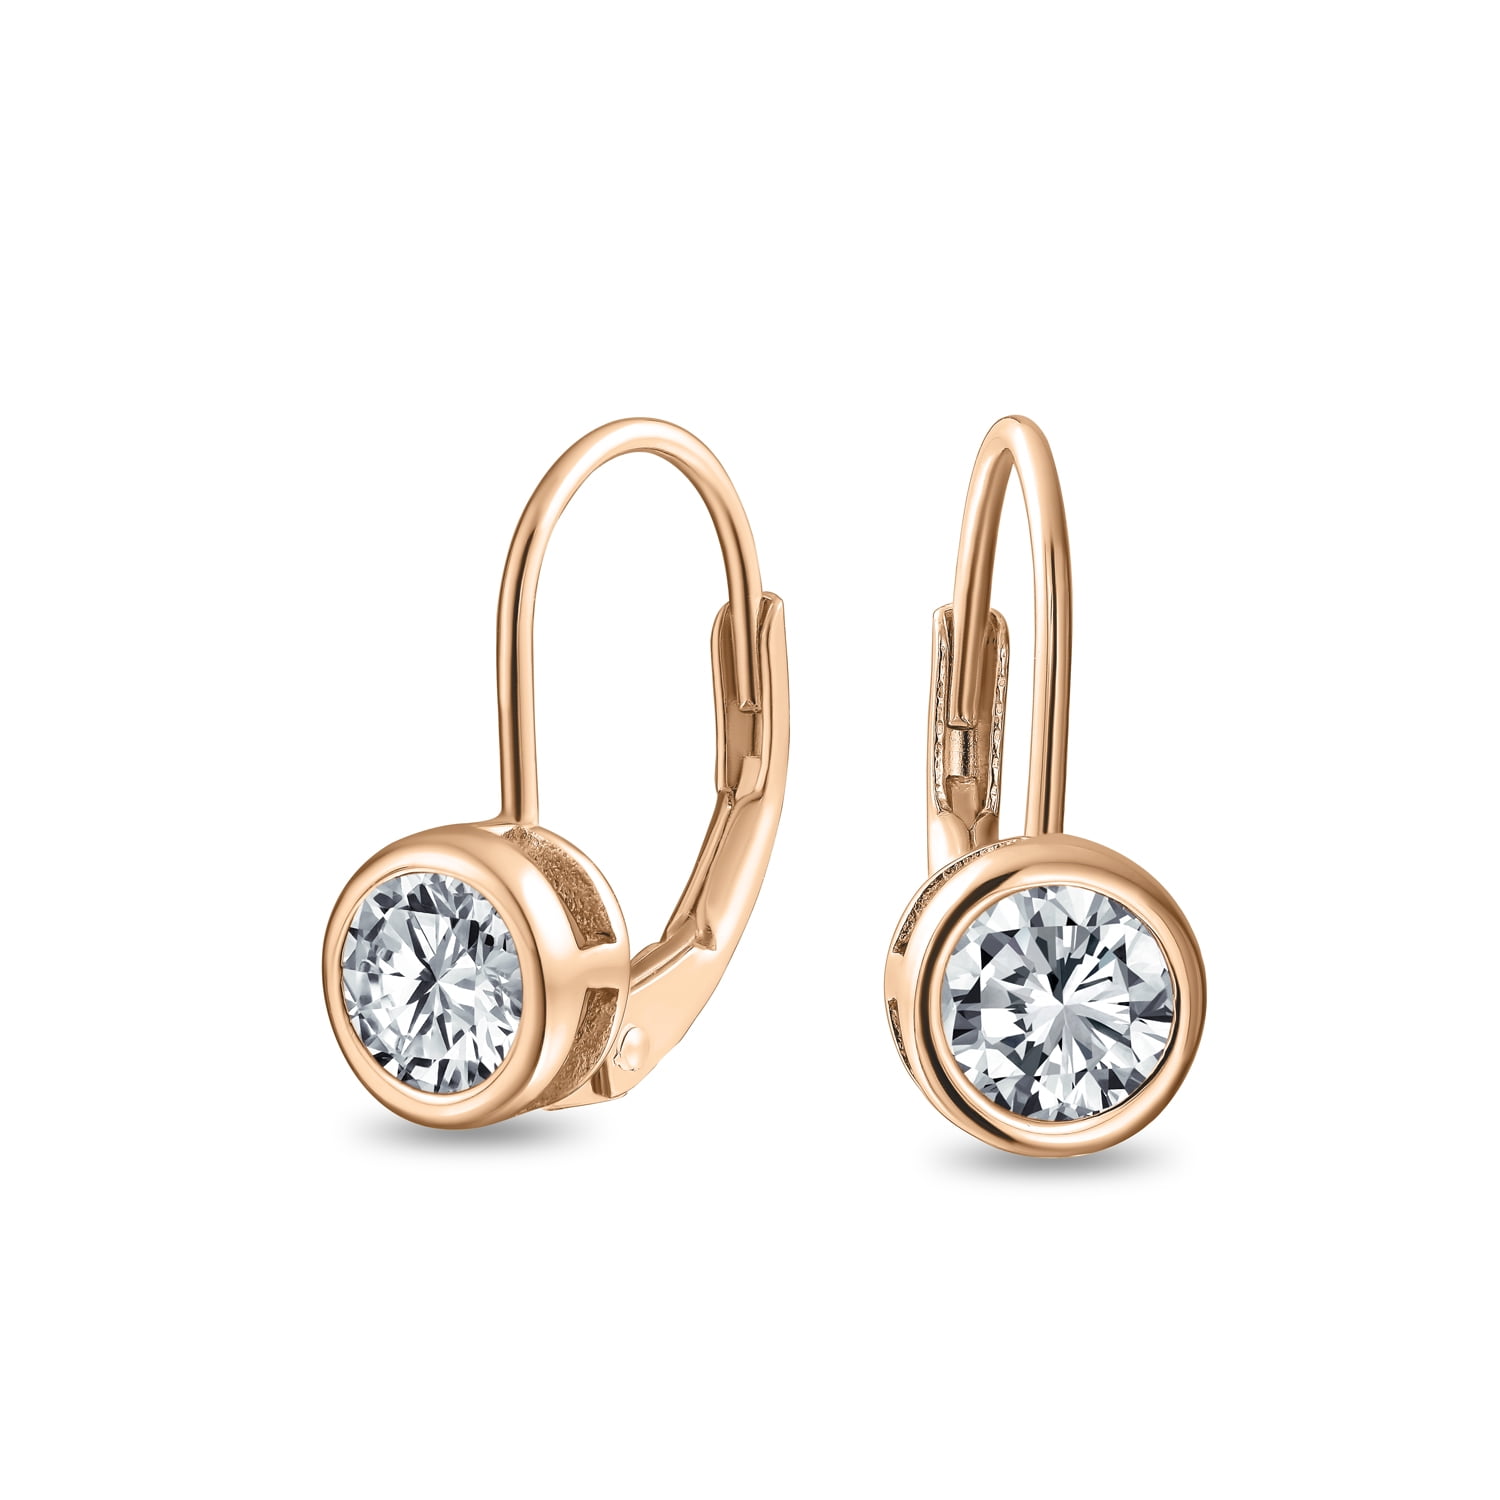 Gold Plated Earrings,CZ Earrings For Women Best Gifts For Her Brass Earrings Cubic Zirconia Earrings Beautiful And Stylish Dangle Earrings for Women Girls Gemstone Bezel Earrings